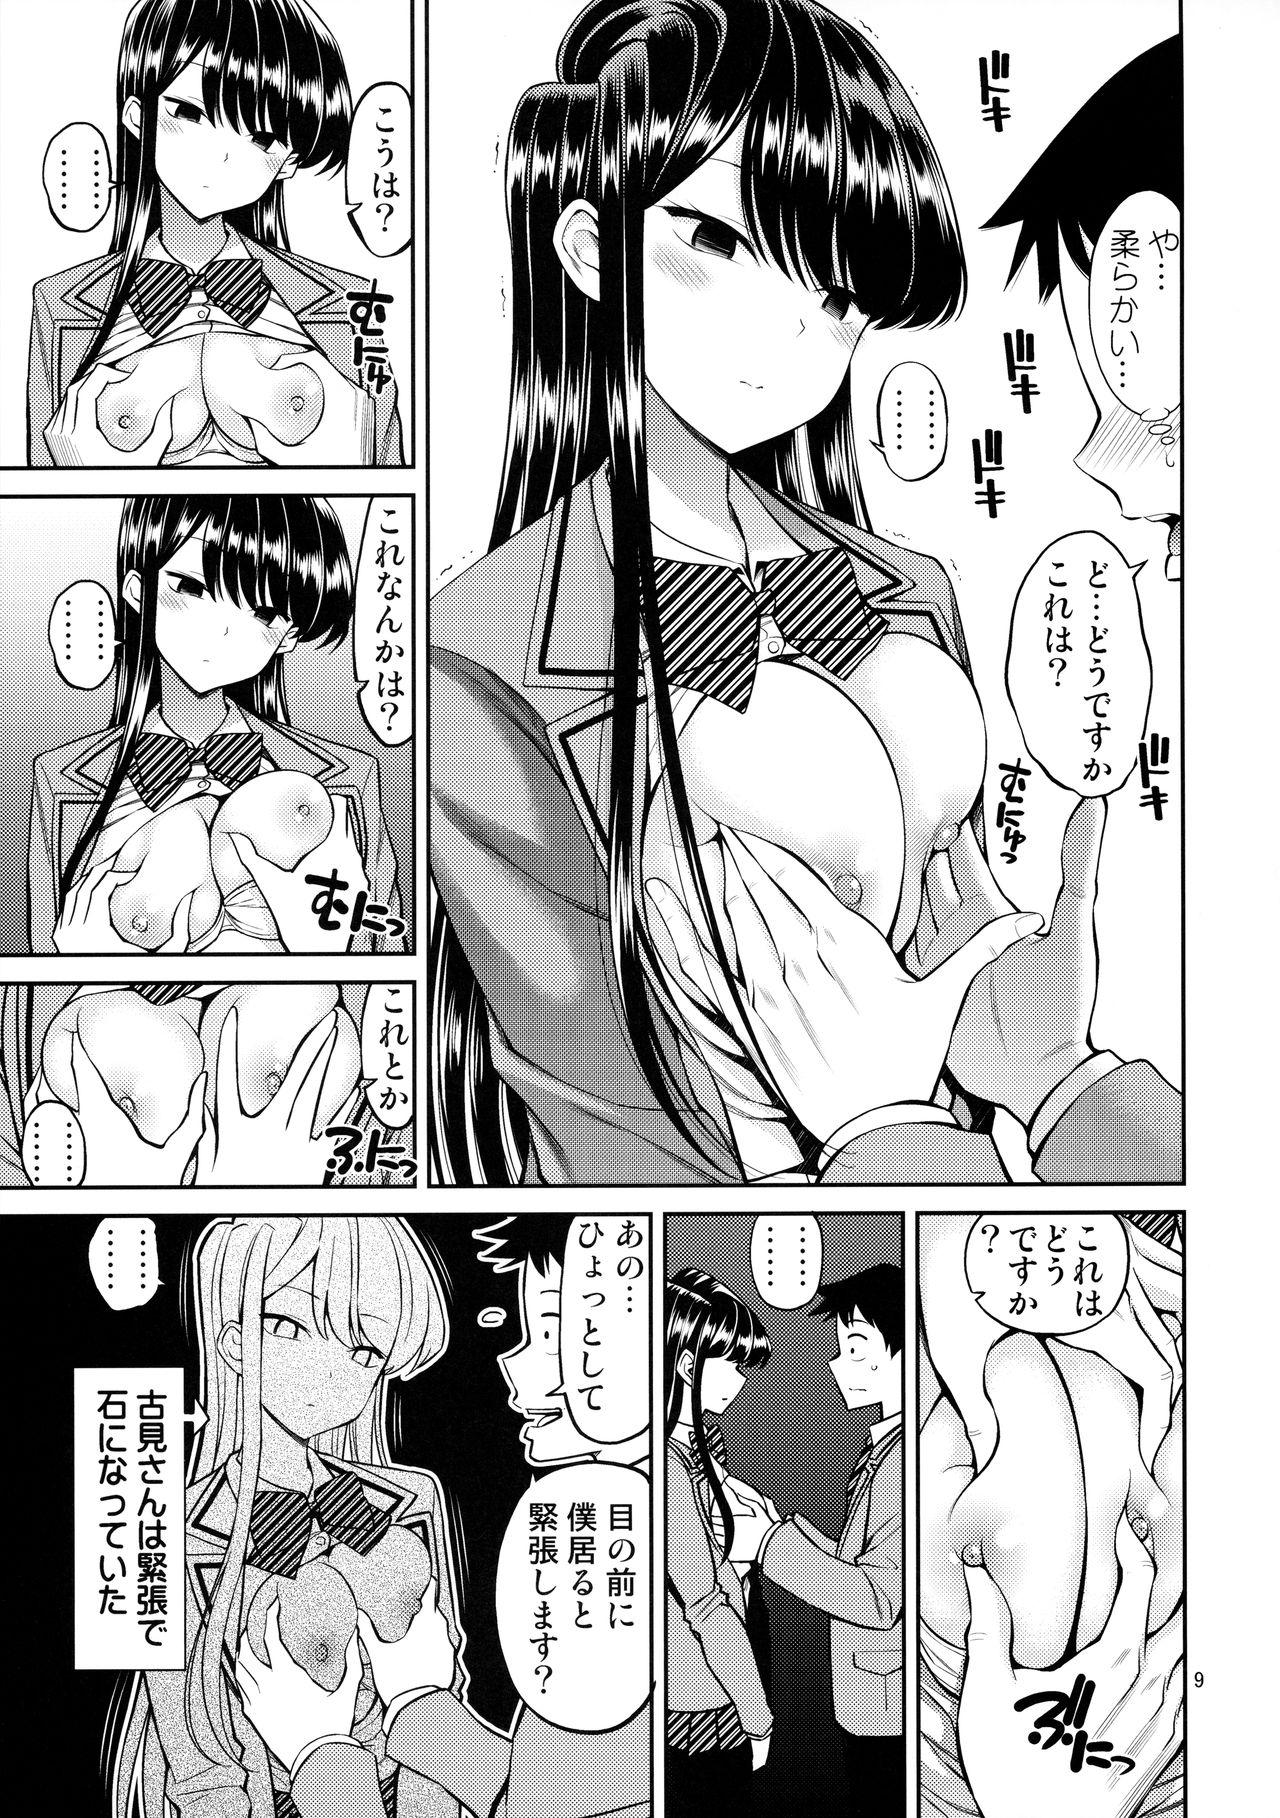 Slutty Komi-san wa, Binkan desu. - Komi-san wa komyushou desu. Ffm - Page 8